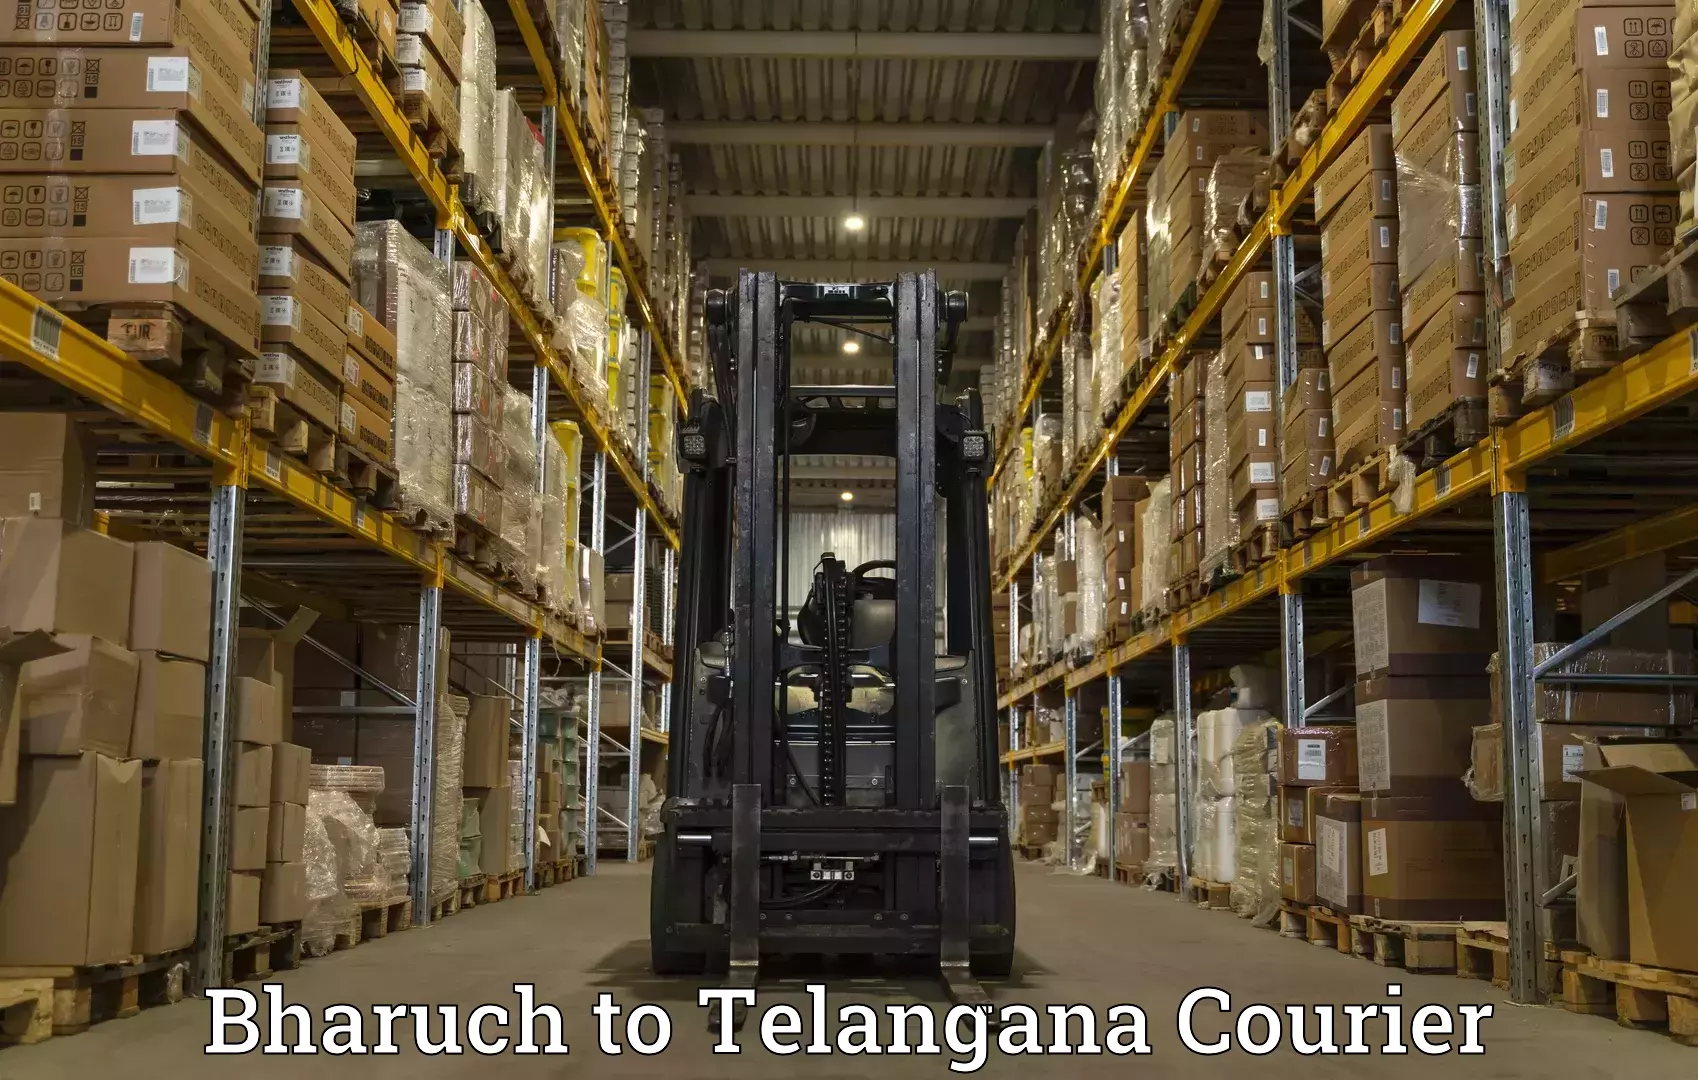 Global logistics network Bharuch to Manuguru